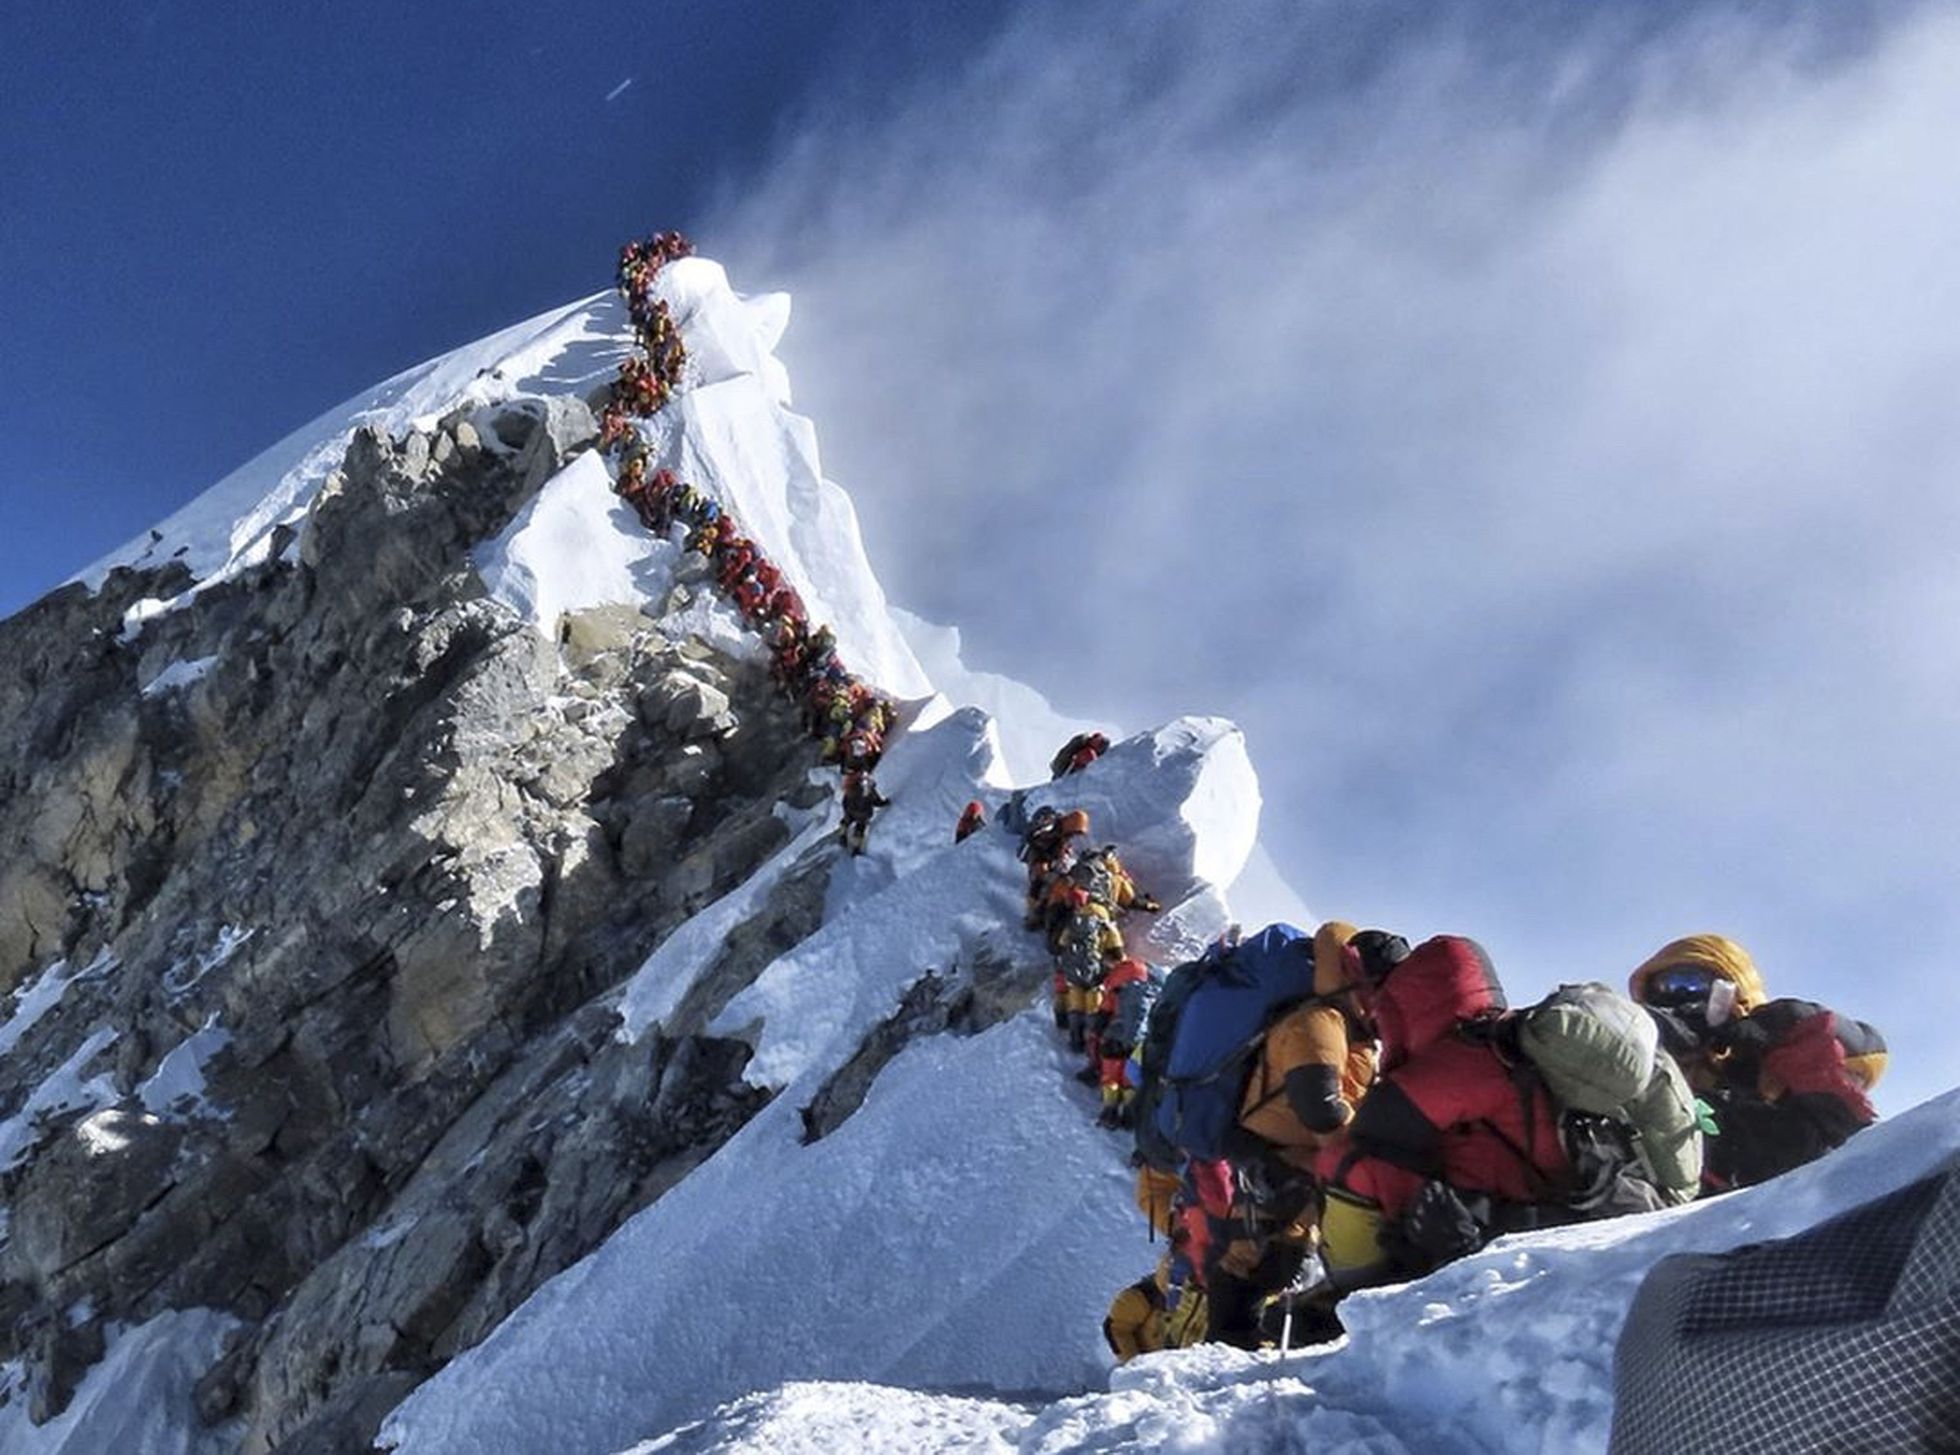 Grandes colas en el Everest la pasada primavera.